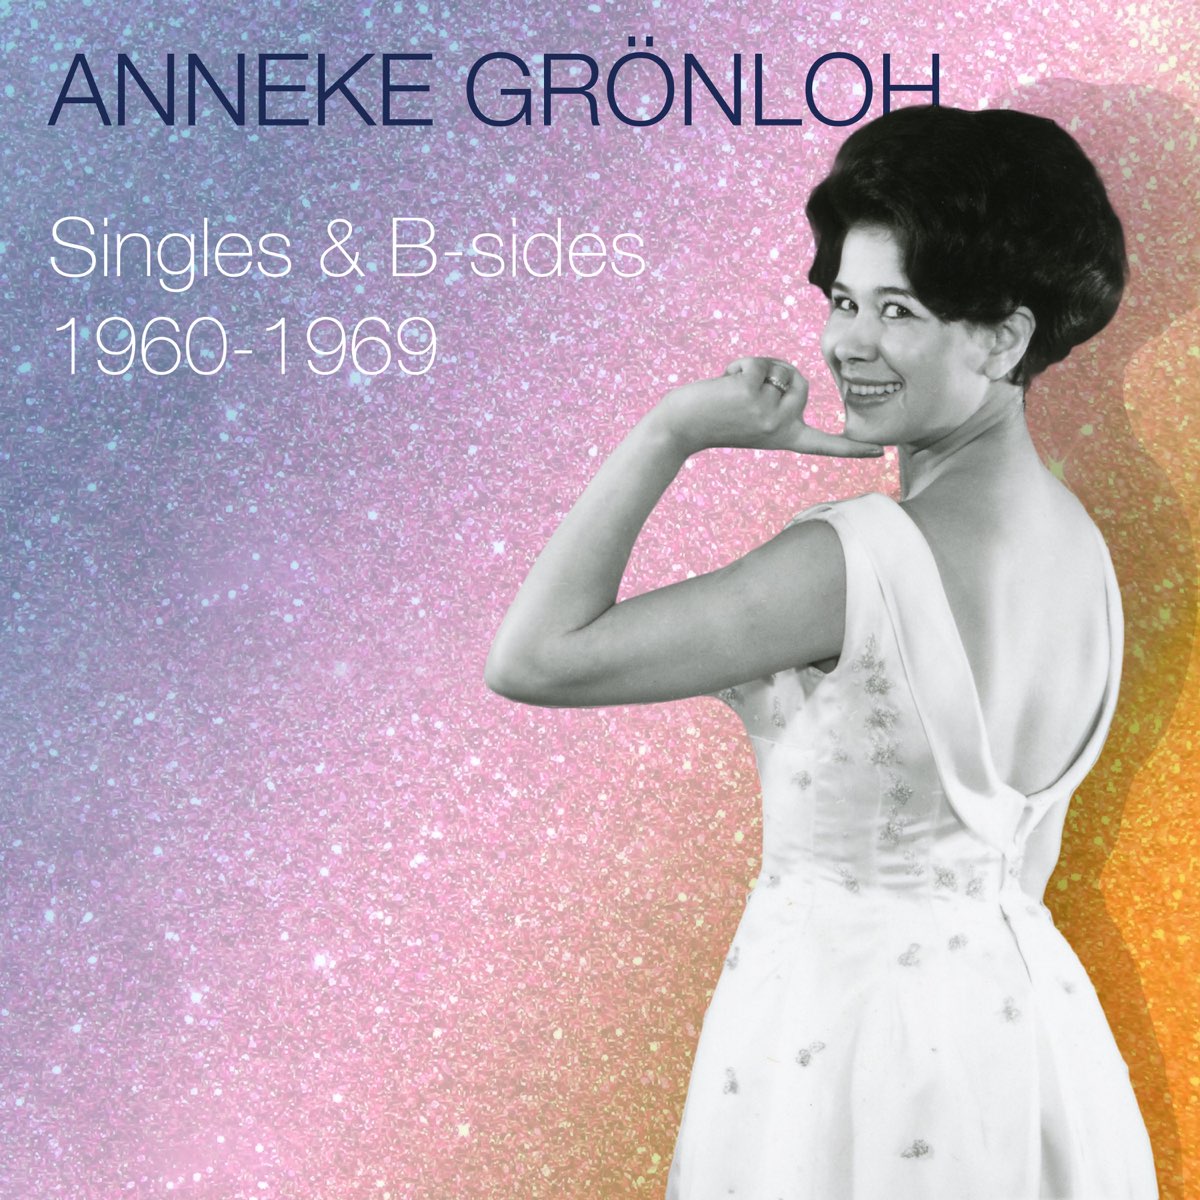 Singles & B-sides 1960-1969“ von Anneke Grönloh bei Apple Music